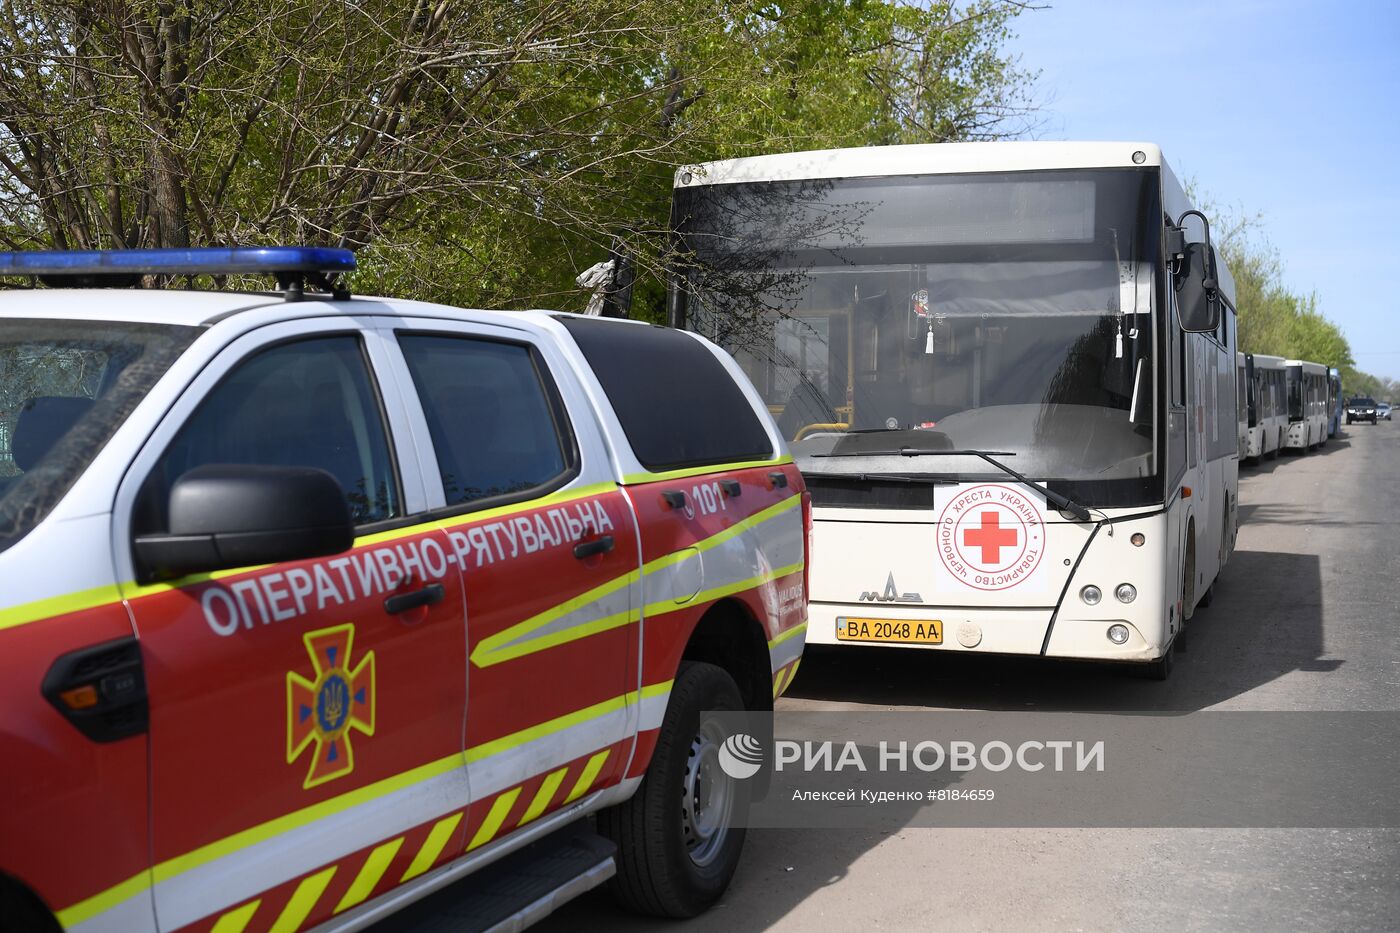 Колонна автобусов МКК в селе Безыменное в ДНР